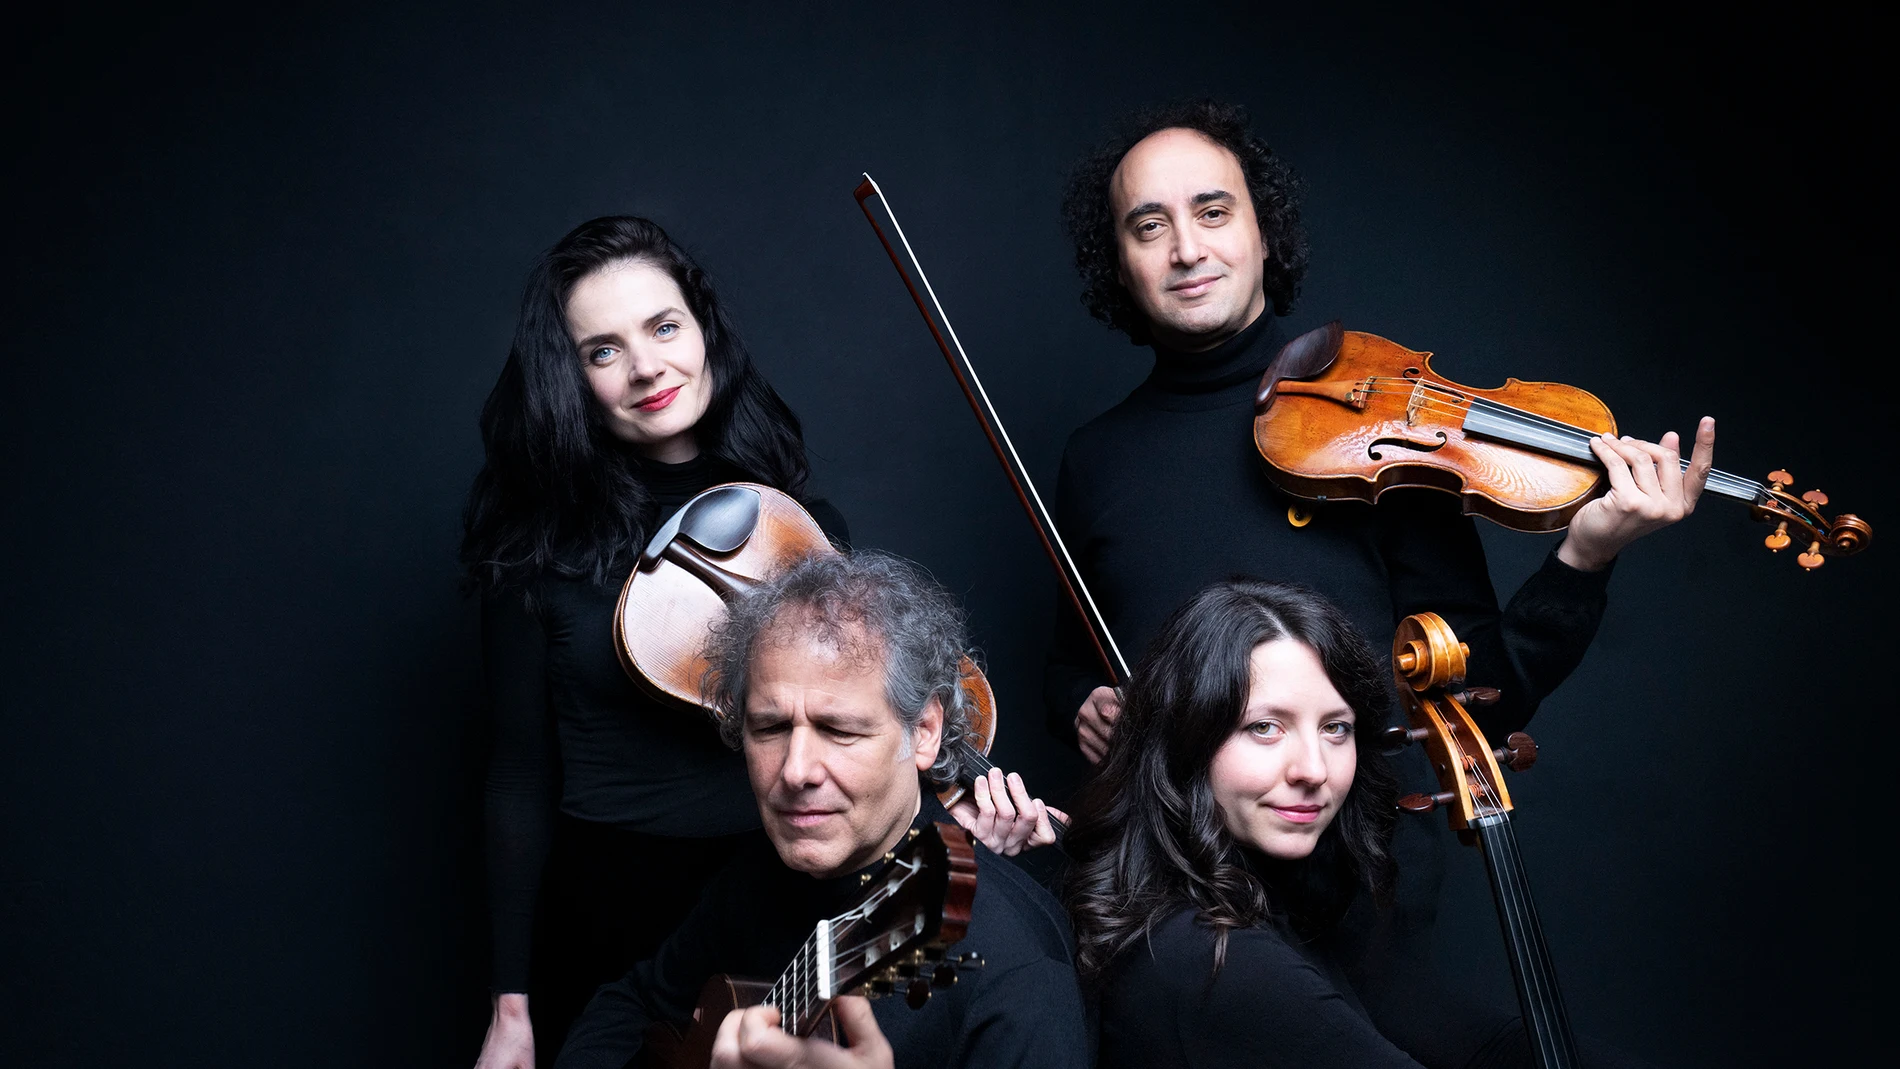 El violinista Mario Hossen, la viola Marta Potulska, la chelista Liliana Kehayova y el guitarrista Alexander Swete conforman el Paganini Ensemble Vienna